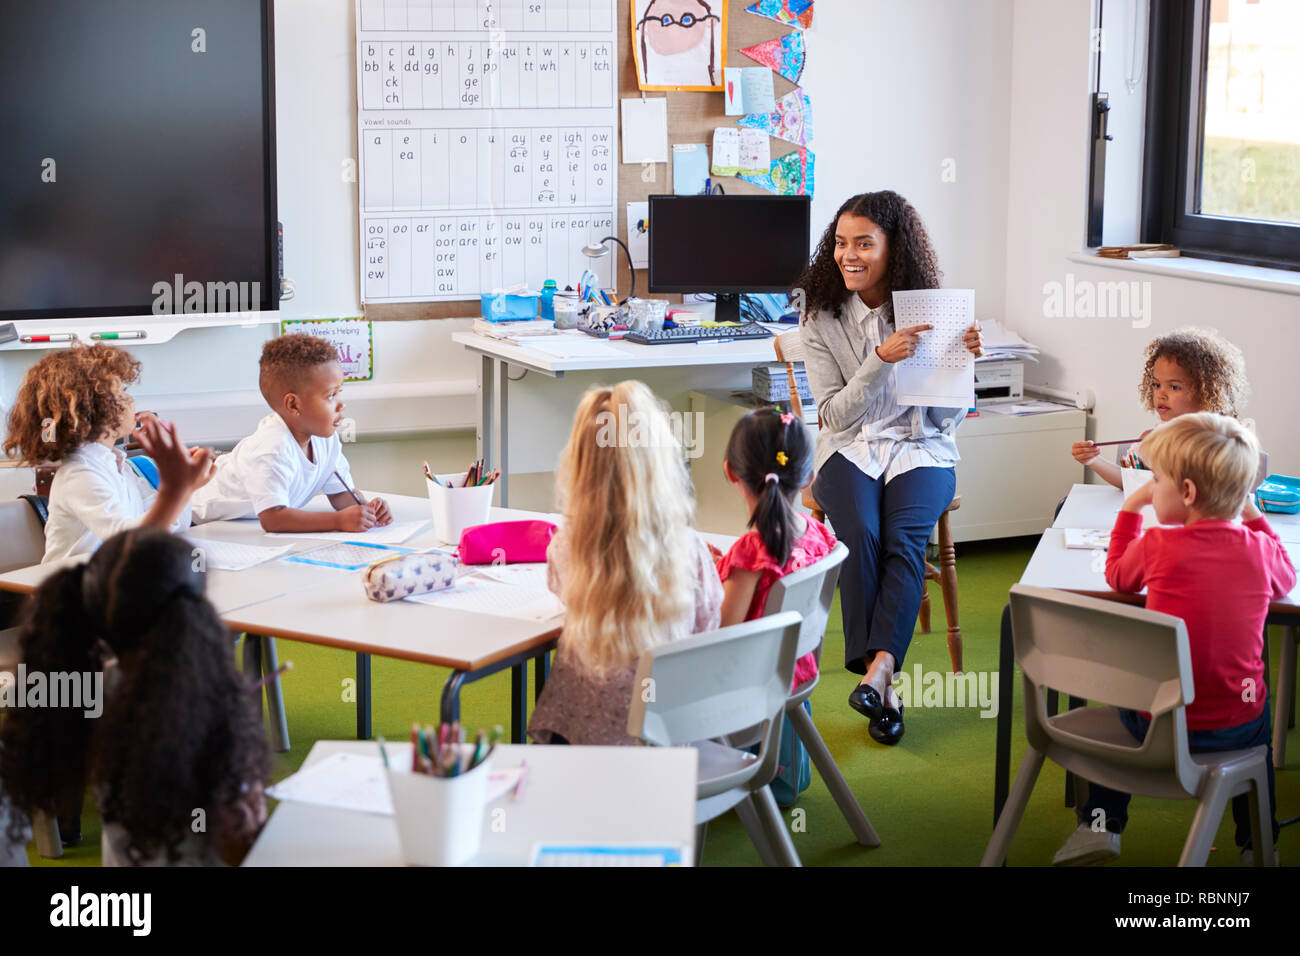 Lächelnd weibliche Infant School Lehrer sitzt auf einem Stuhl in der Schule in einem Klassenzimmer halten und erklären ein Arbeitsblatt zu Ihnen Stockfoto